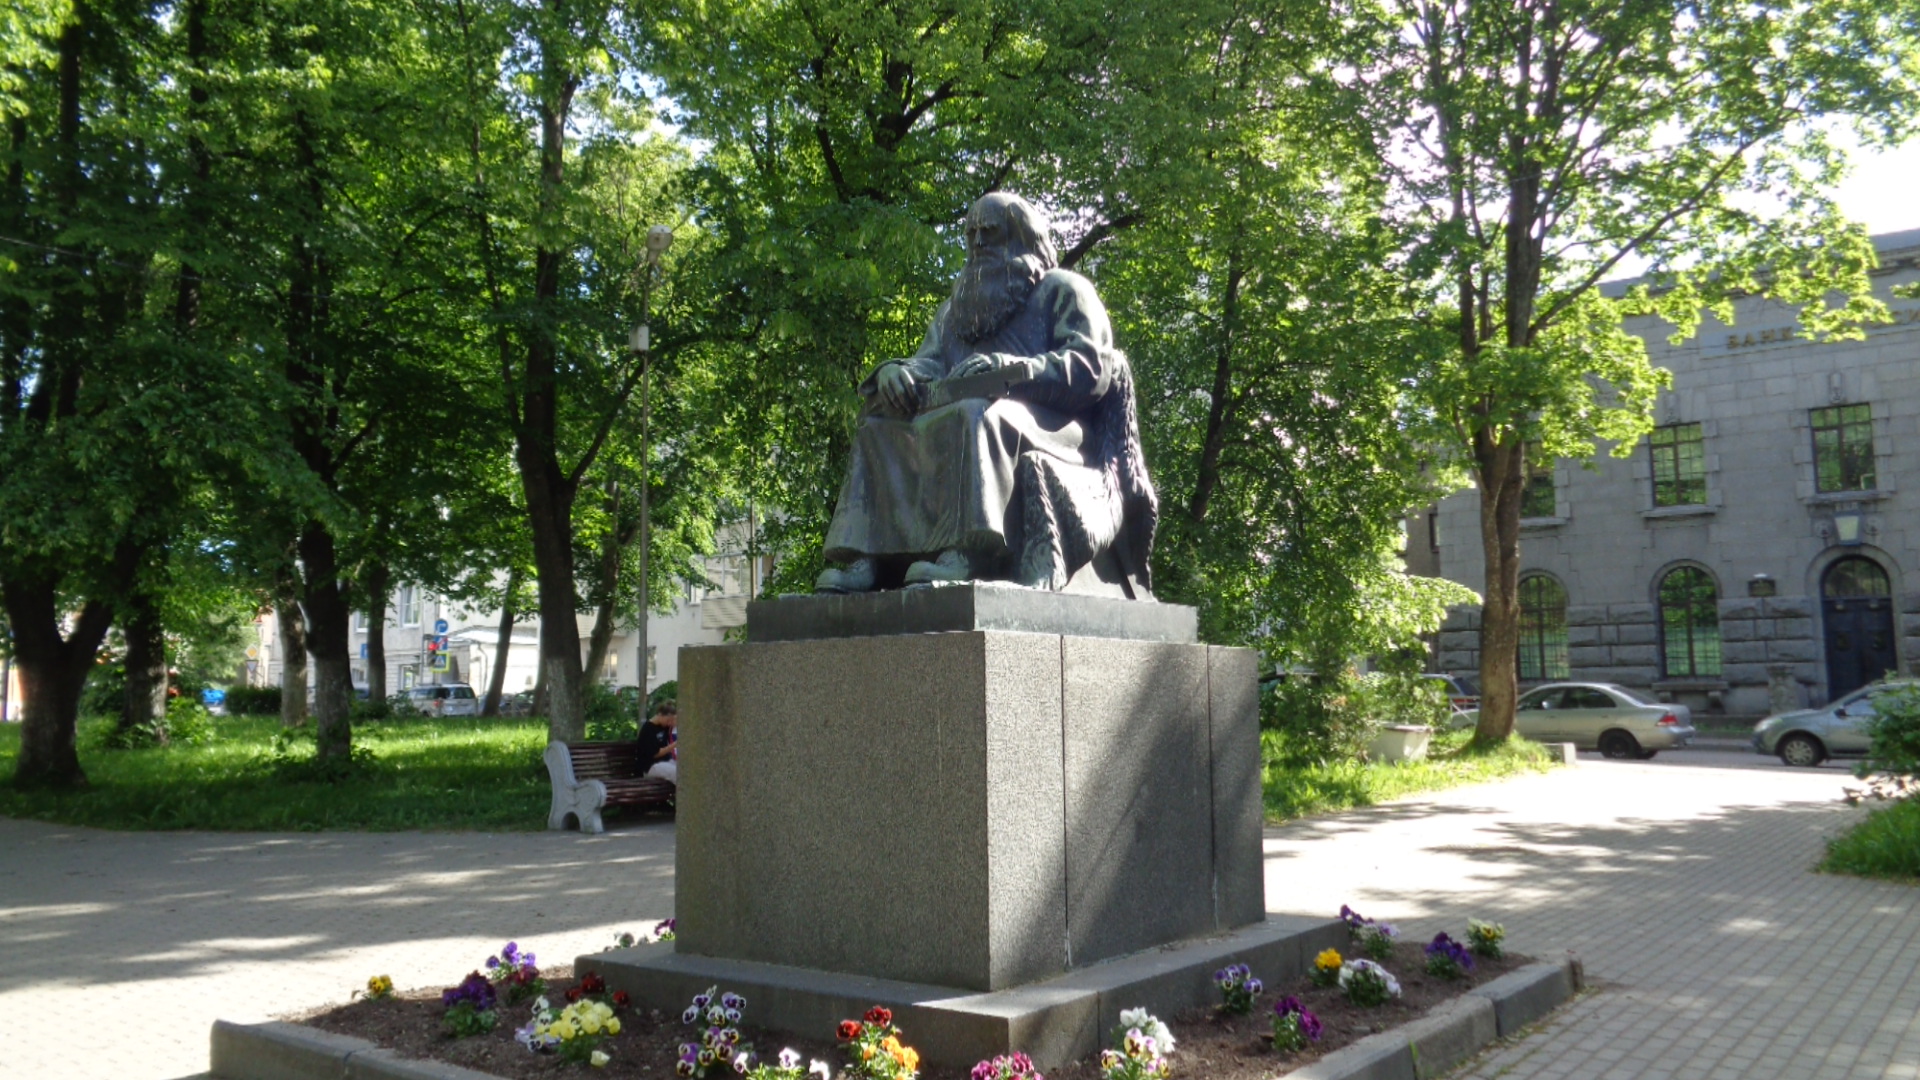 Памятник карельскому рунопевцу Петри Шемейкке